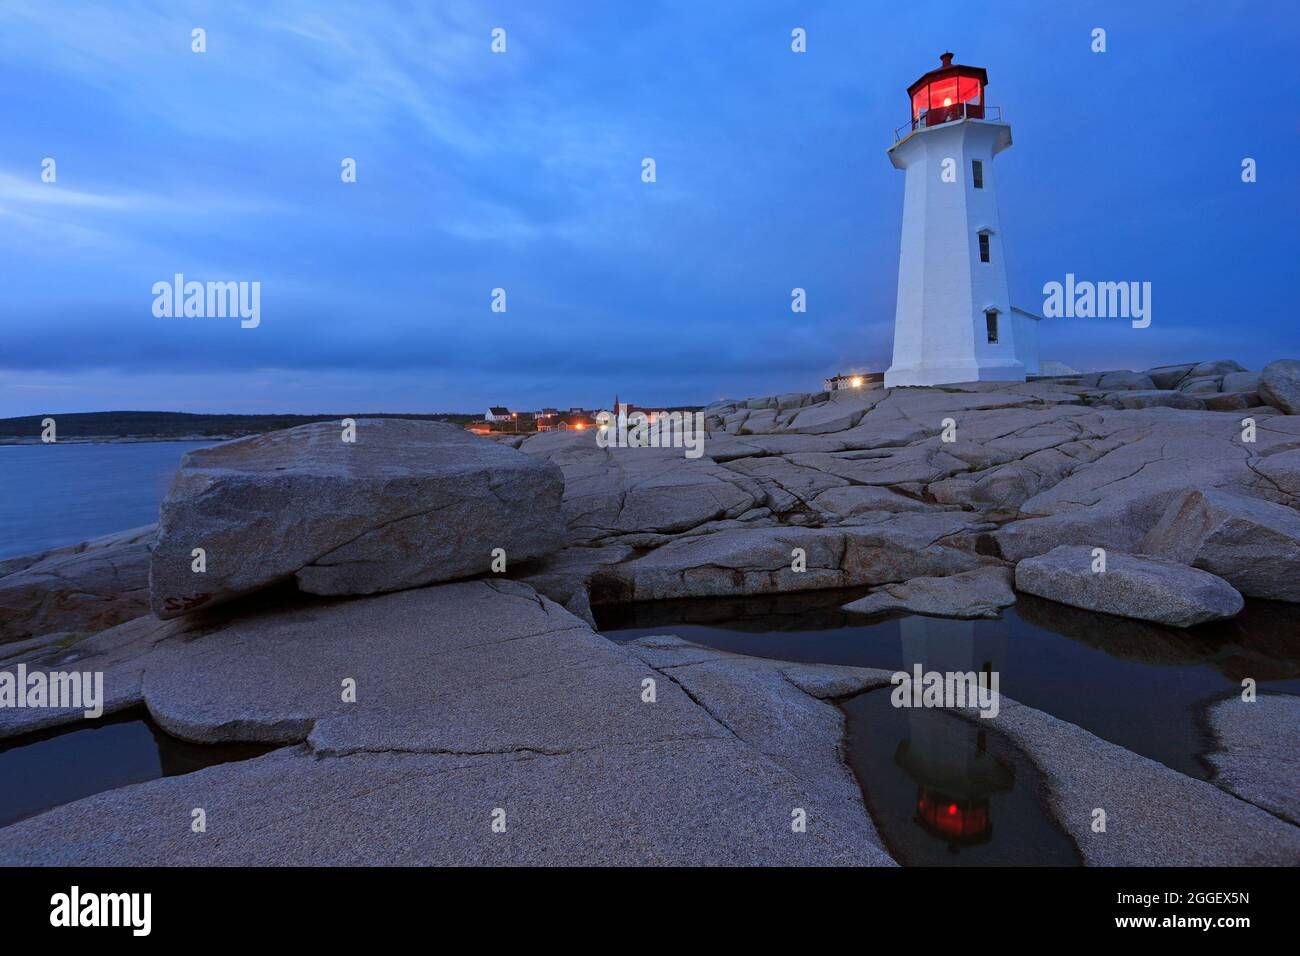 Le phare de Peggy’s Cove illuminé au crépuscule par réflexion dans l’eau, Nouvelle-Écosse, Canada Banque D'Images